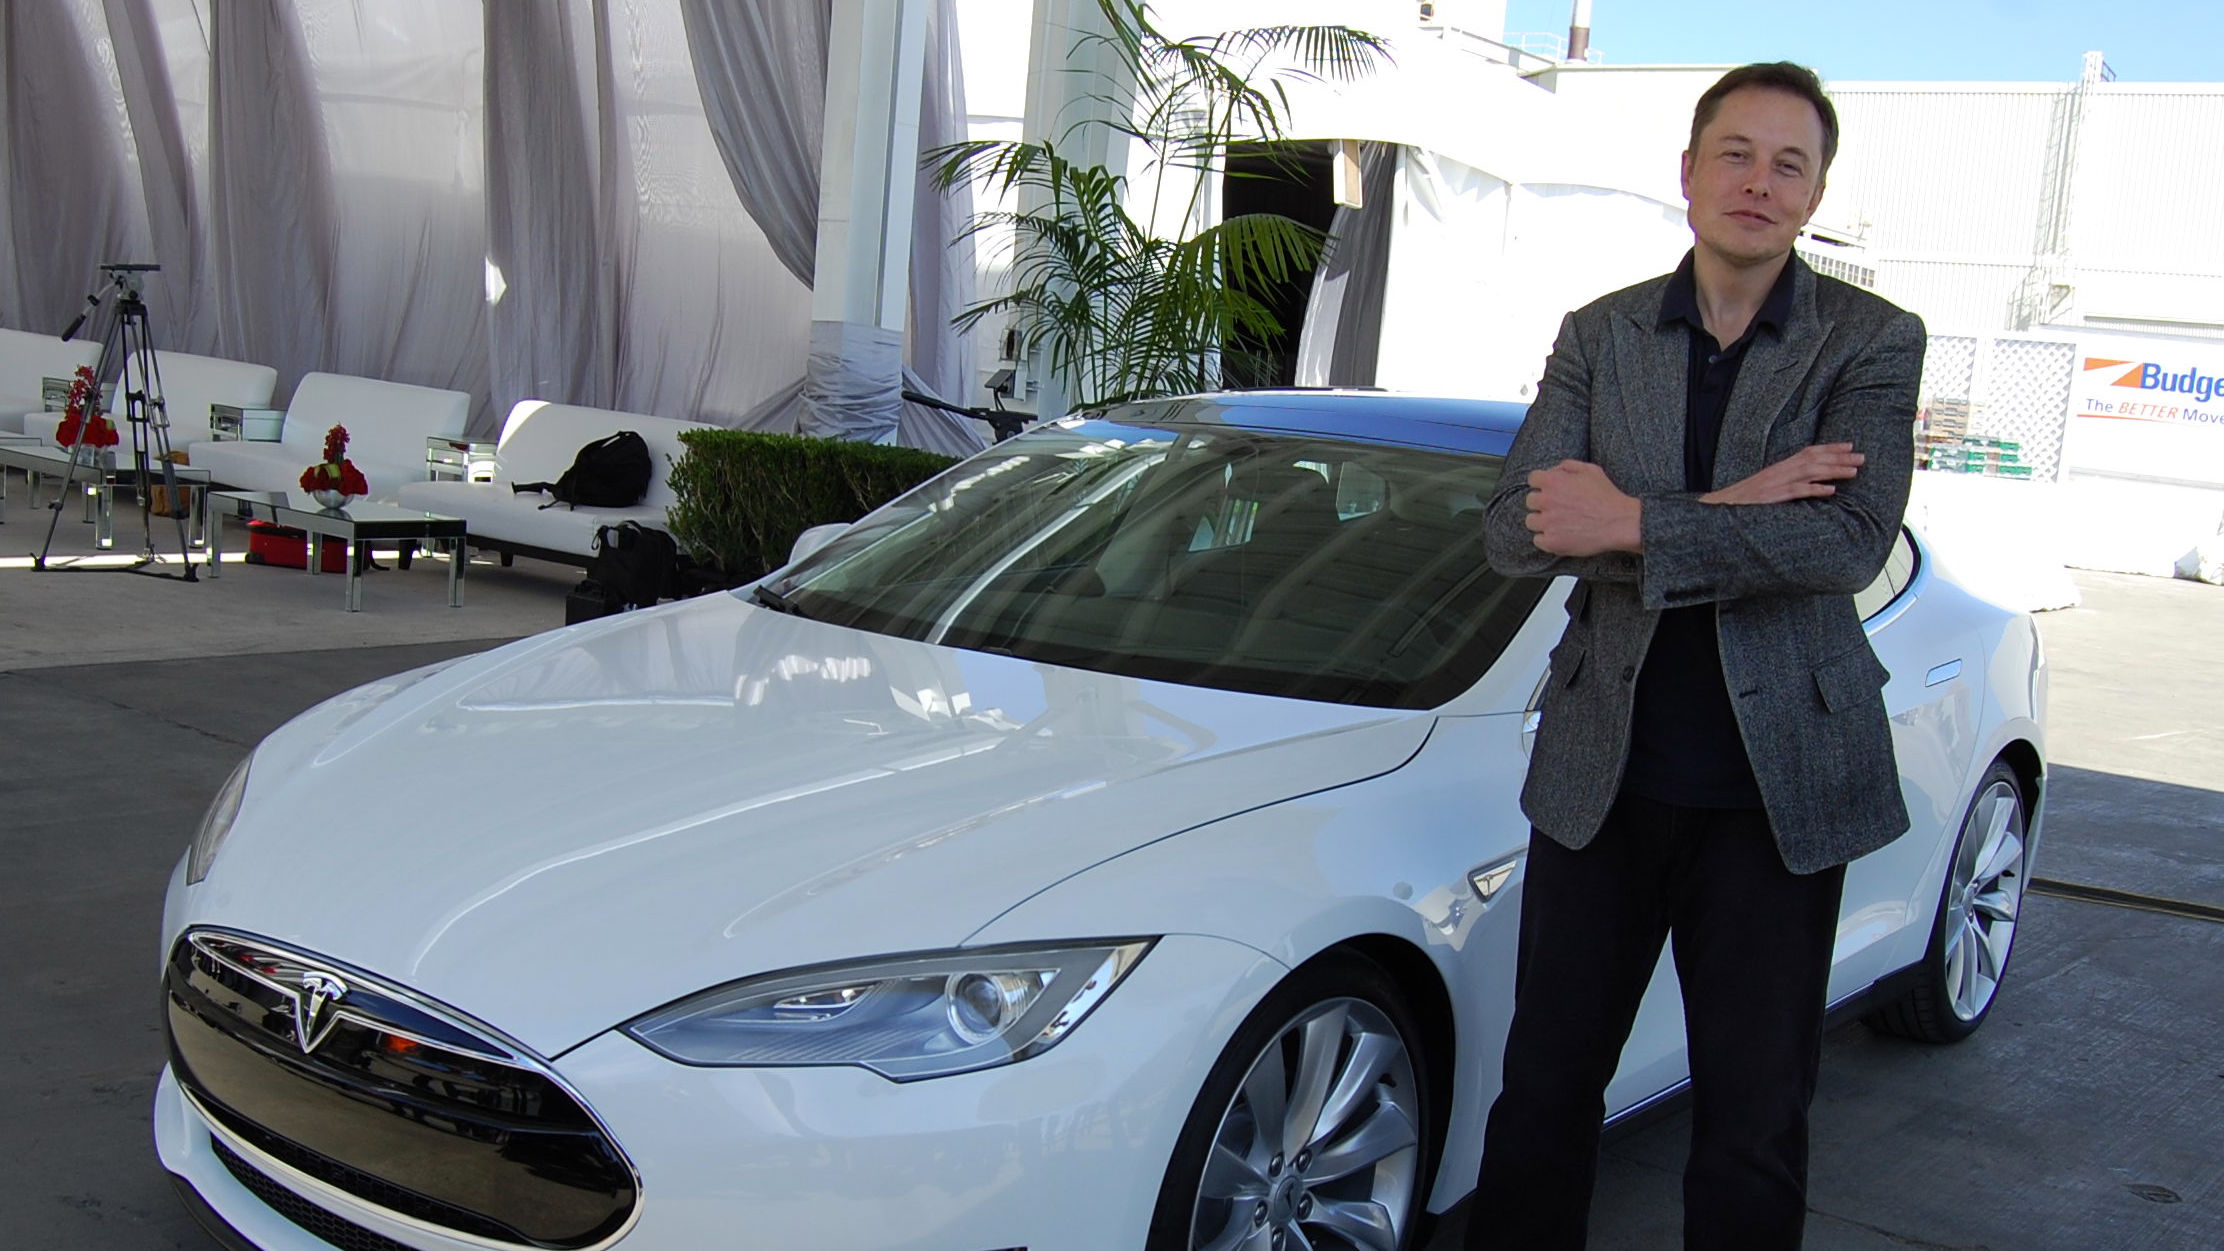 Nevral teknologi kan bli det neste for Elon Musk.